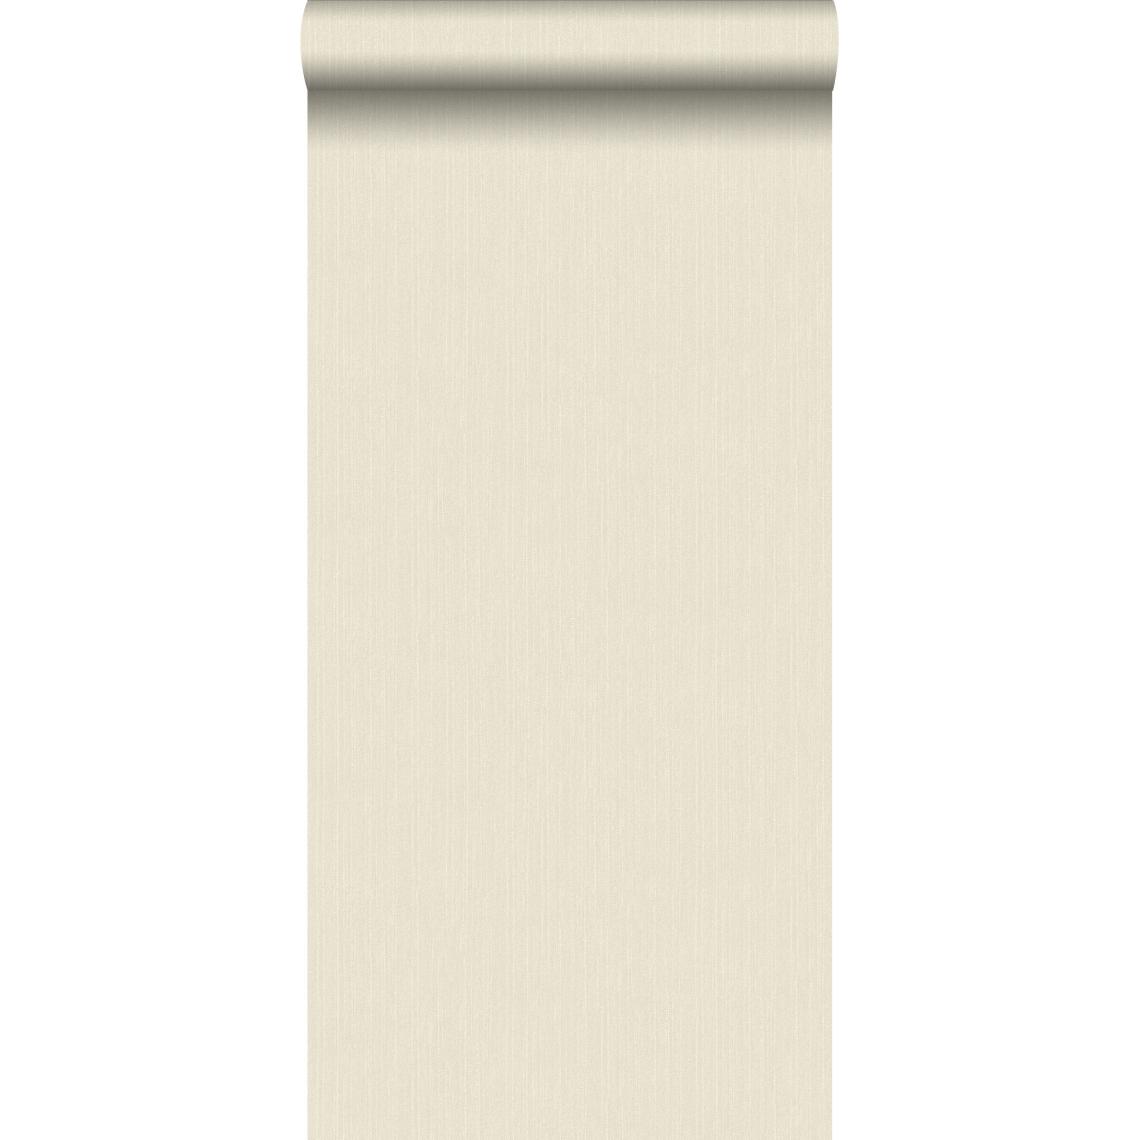 ESTAhome - ESTAhome papier peint texture denim jeans beige - 137732 - 53 cm x 10,05 m - Papier peint